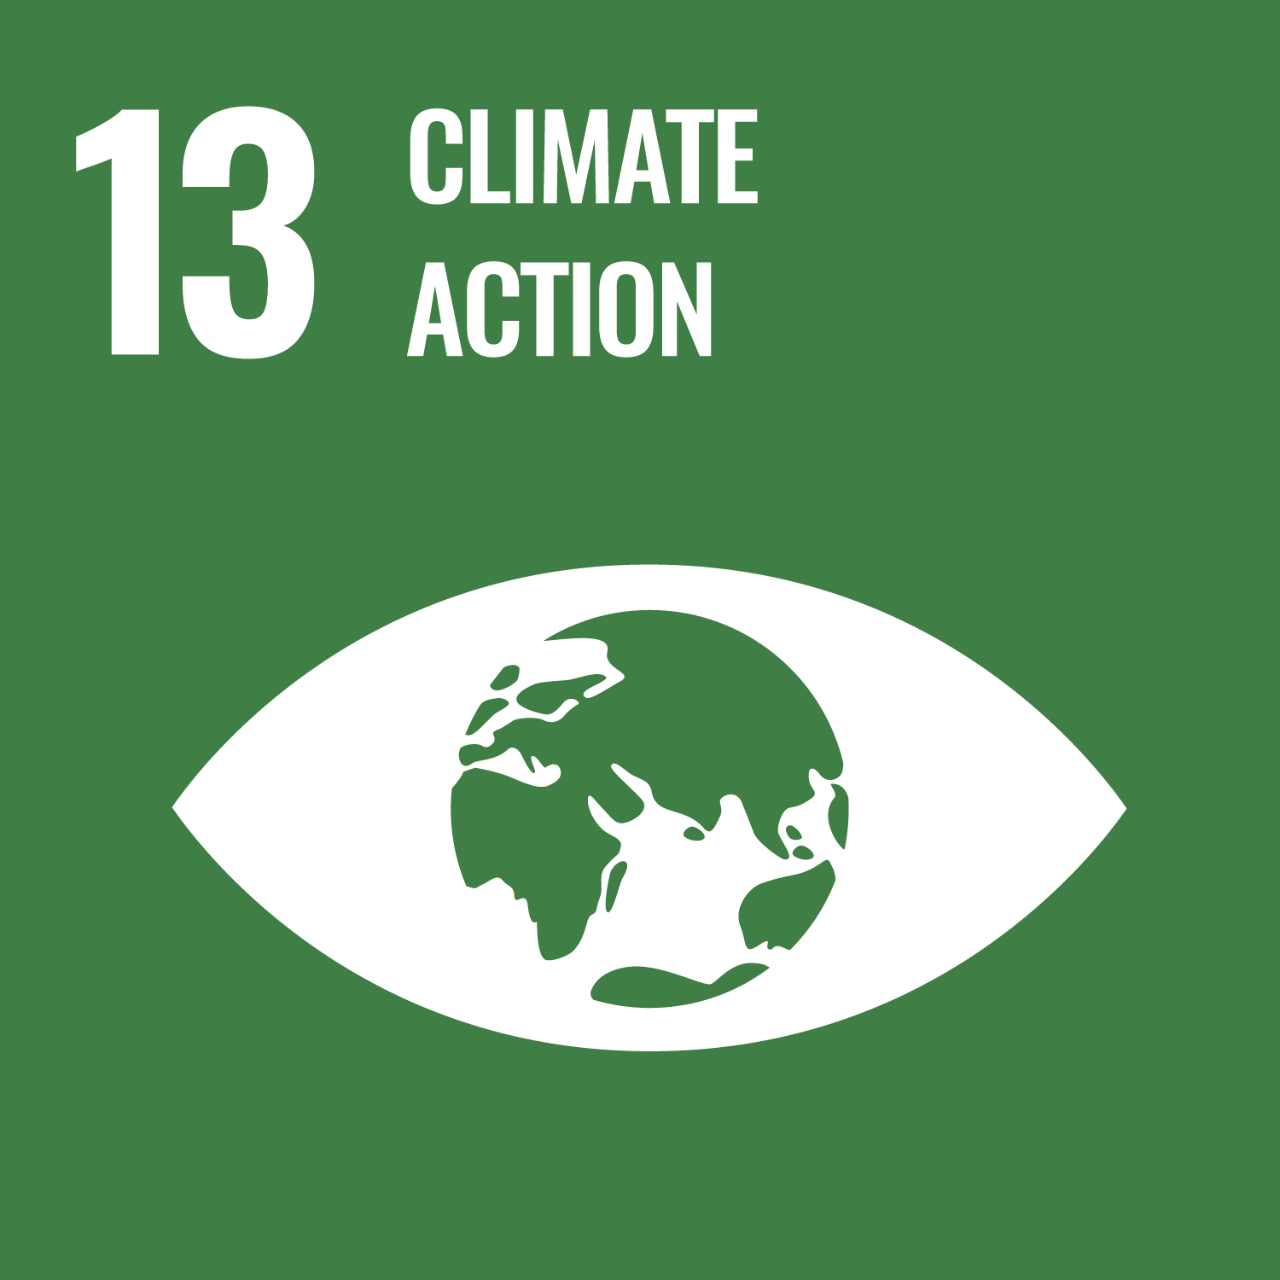 Das Sustainable Development Goal 13 zielt darauf ab, dringend Maßnahmen zur Bekämpfung des Klimawandels und seiner Auswirkungen zu ergreifen